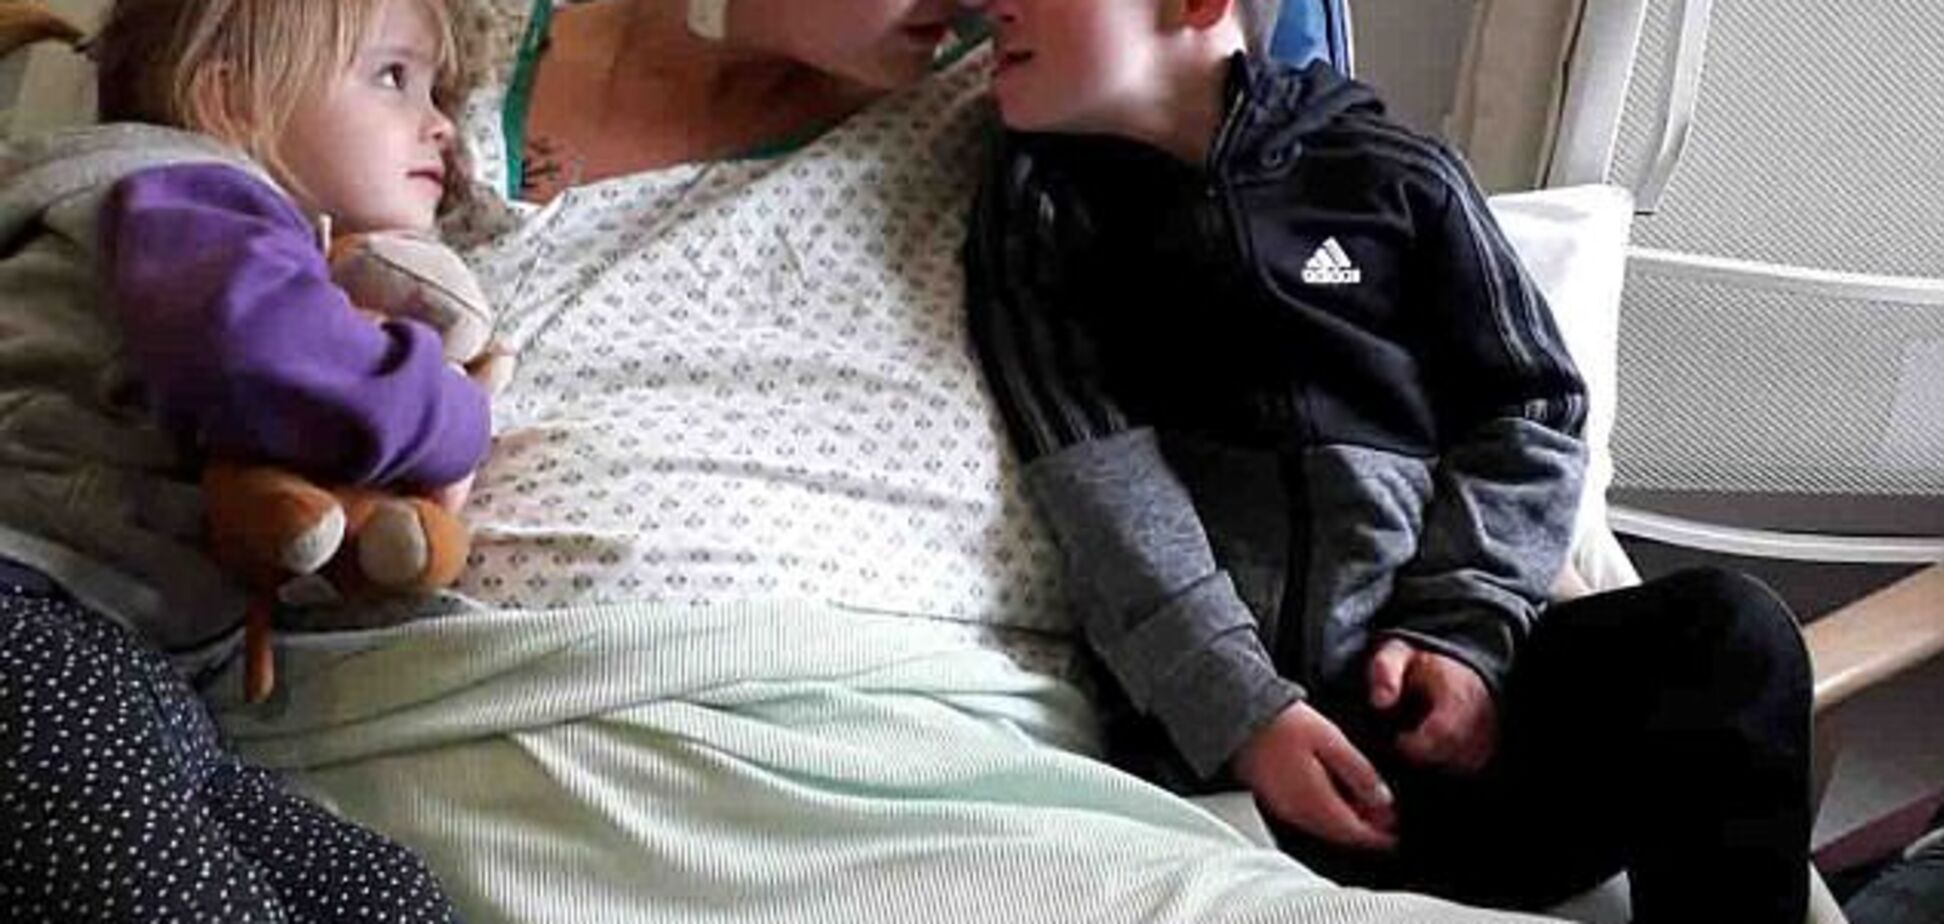 Хвора на рак мама попрощалася з сином із синдромом Дауна: опубліковано трагічне відео